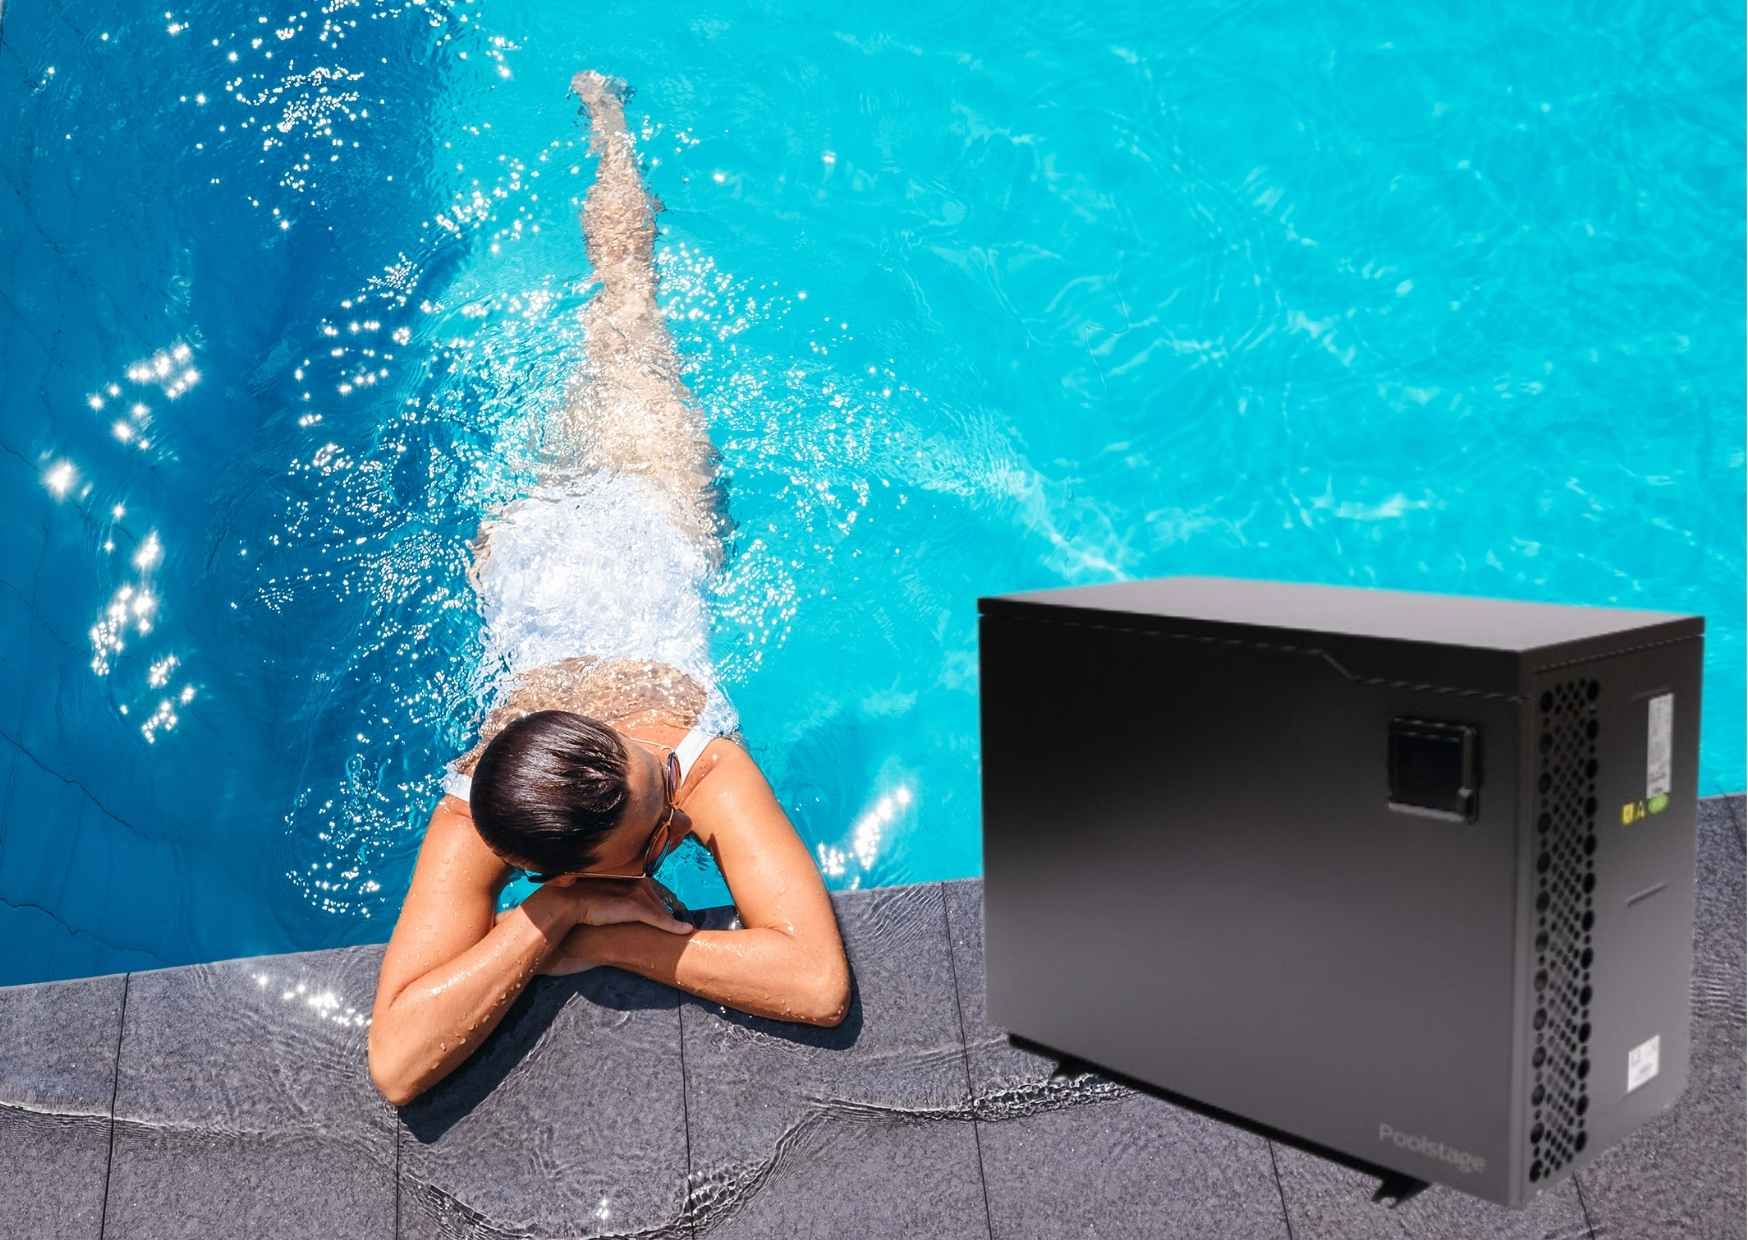 Une femme gît dans une piscine à côté d'une pompe à chaleur